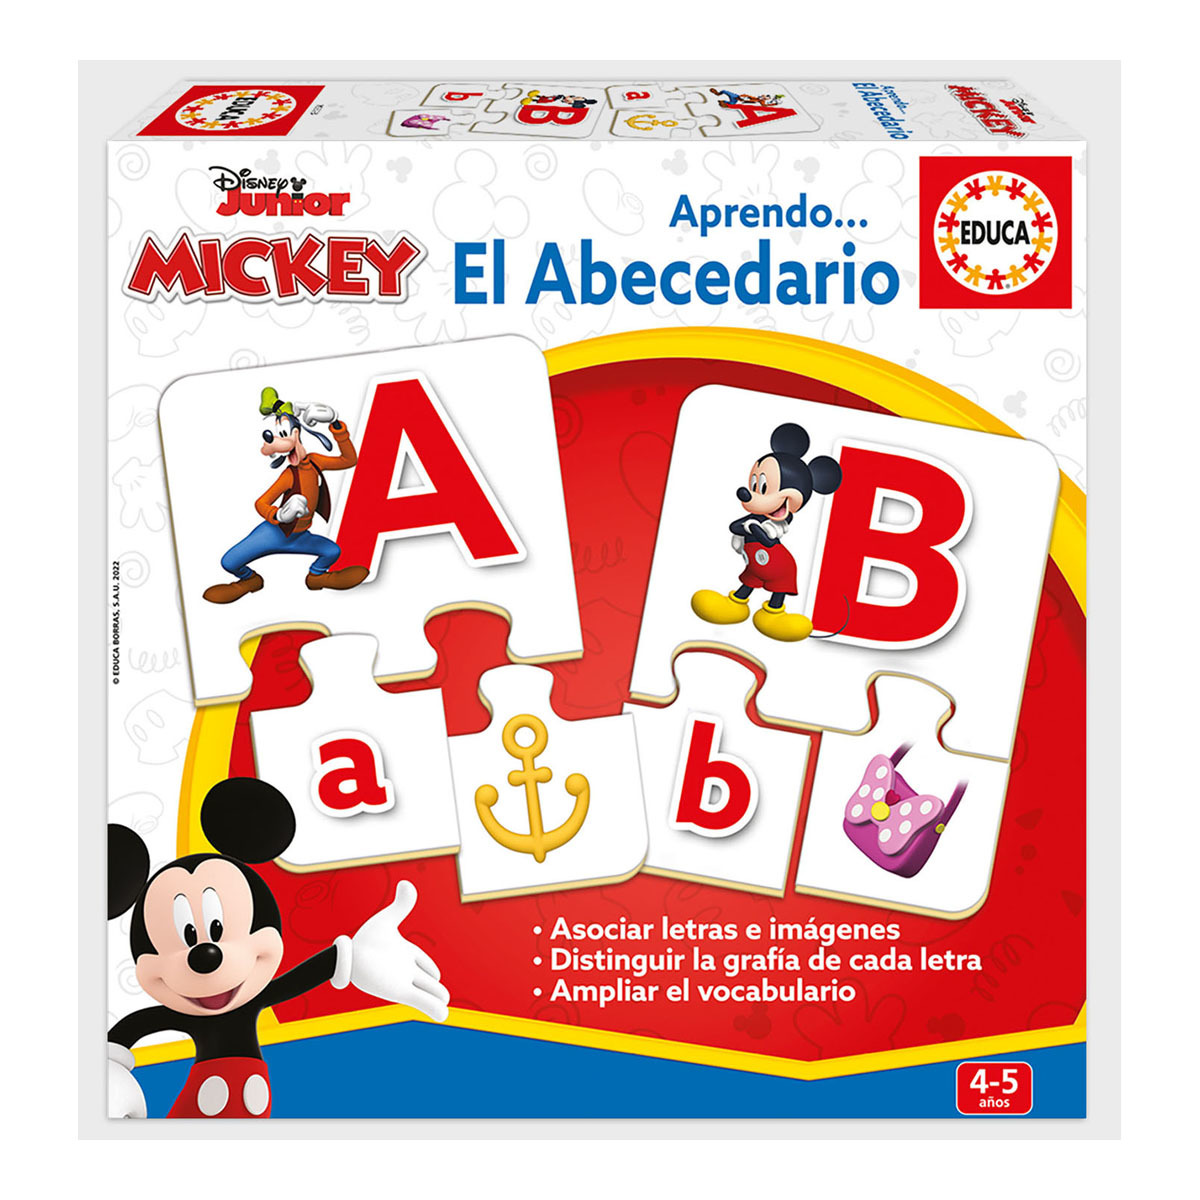 Educa Borrás - El Abecedario Mickey And Friends